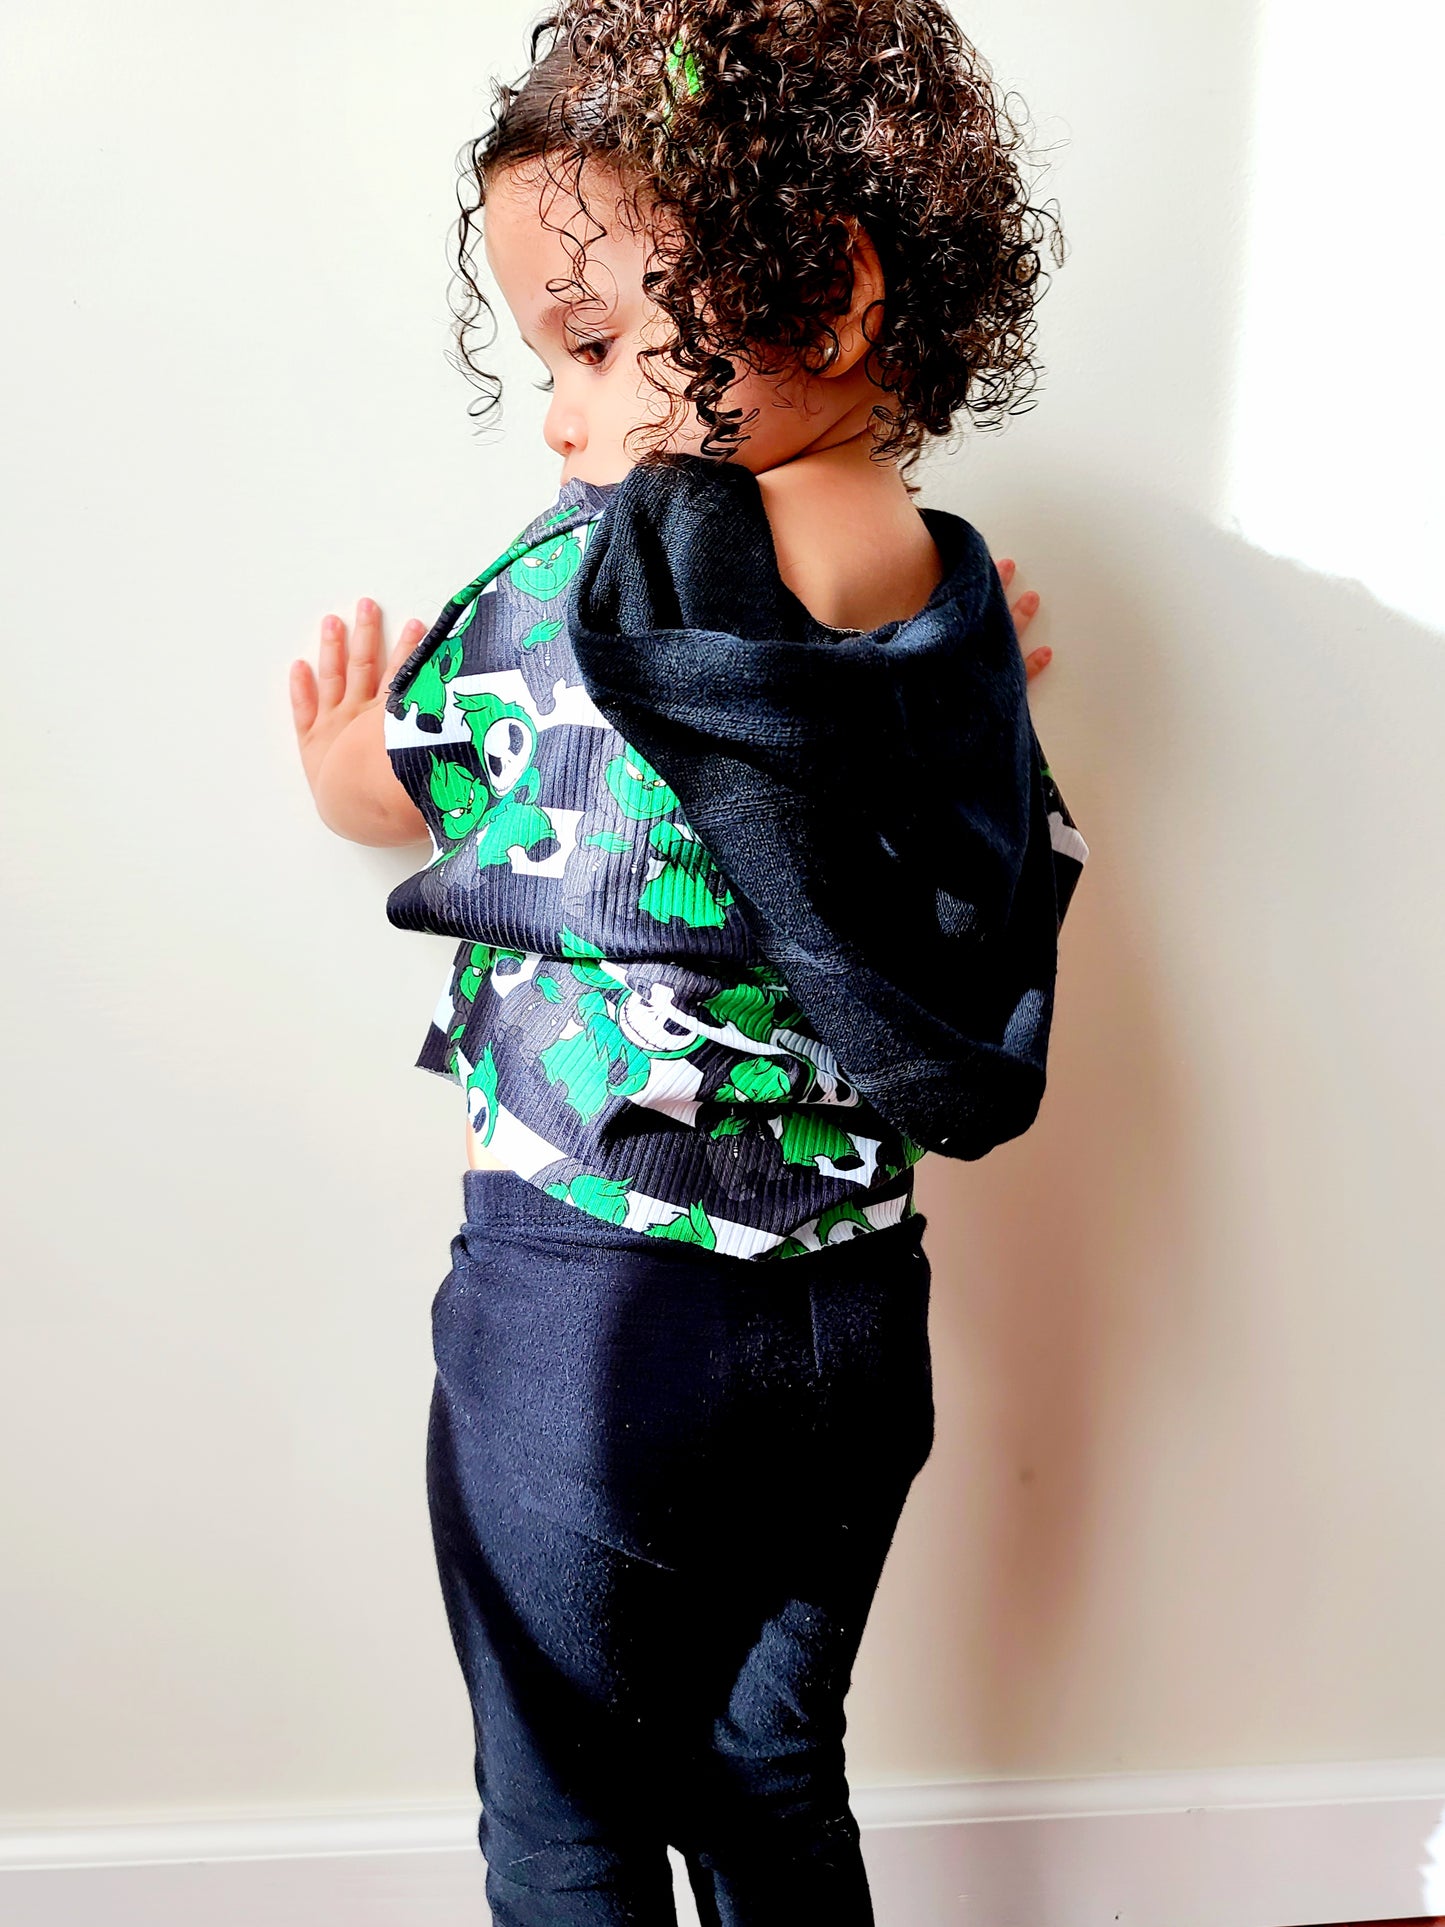 Kids Twist & Slouch - Digital Sewing Pattern - dolman style top